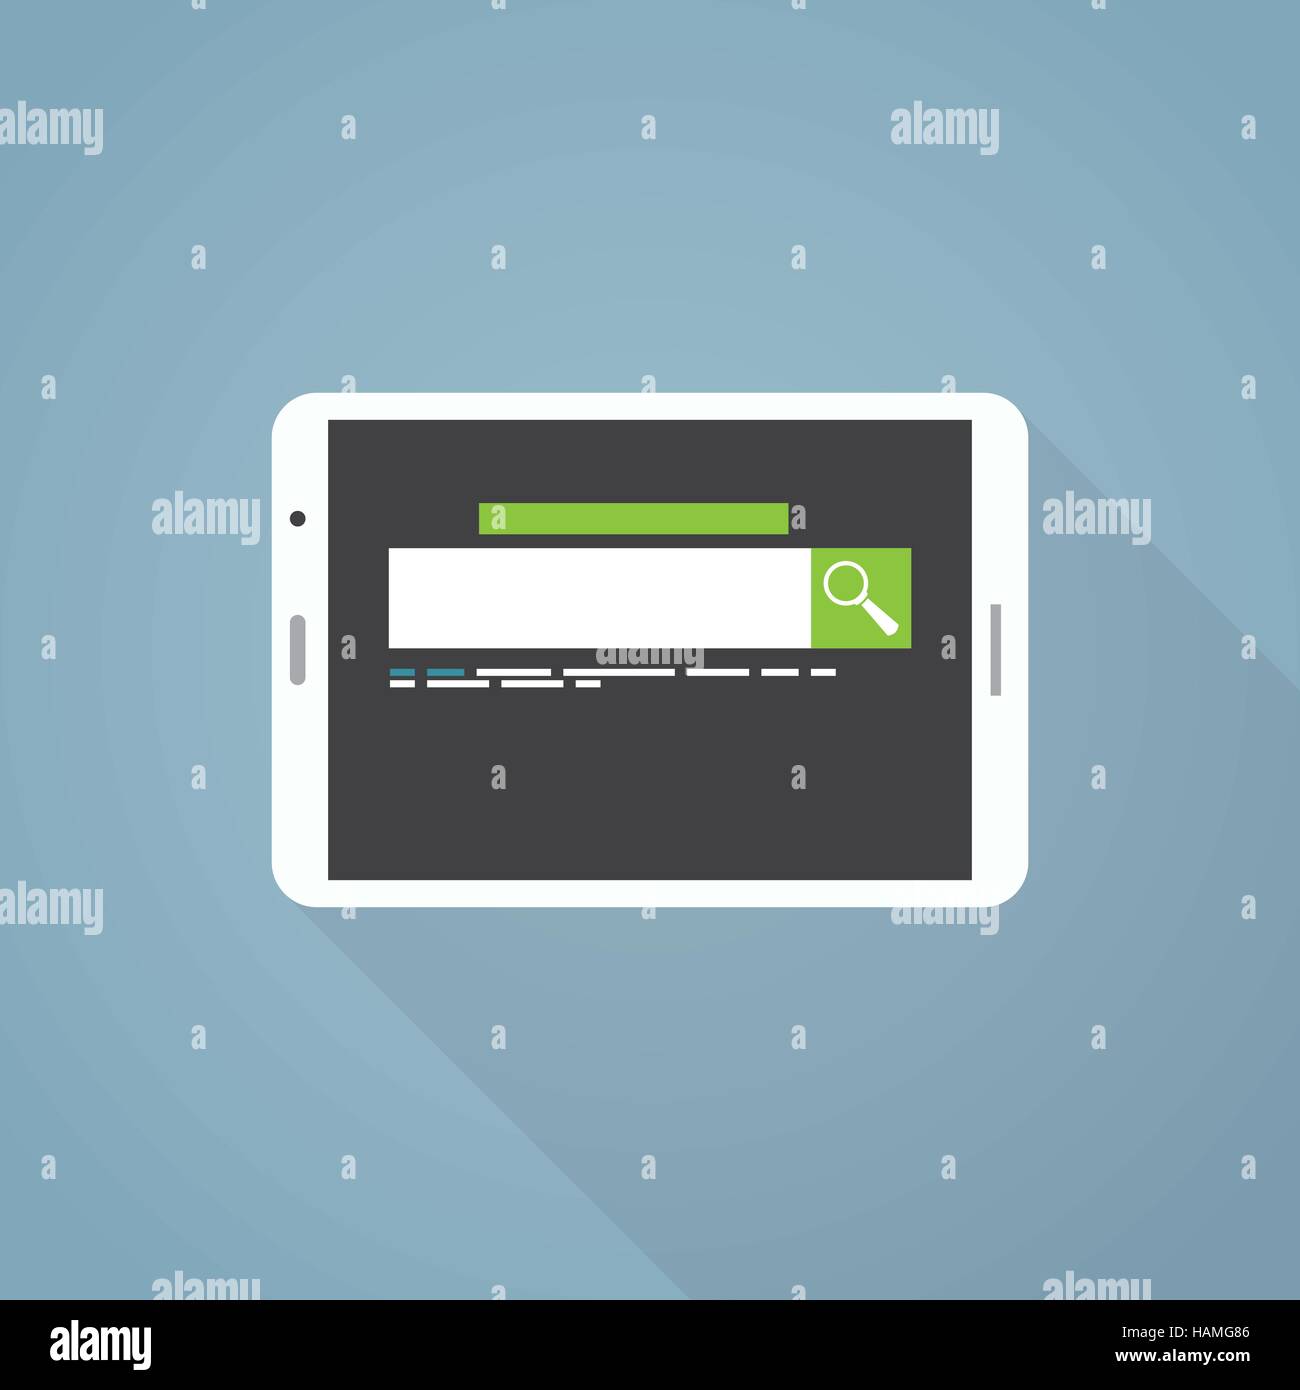 Flache Darstellung mit langen Schatten. Weiße Tablette und Suchmaschine mit grünen Suchtaste. Stock Vektor